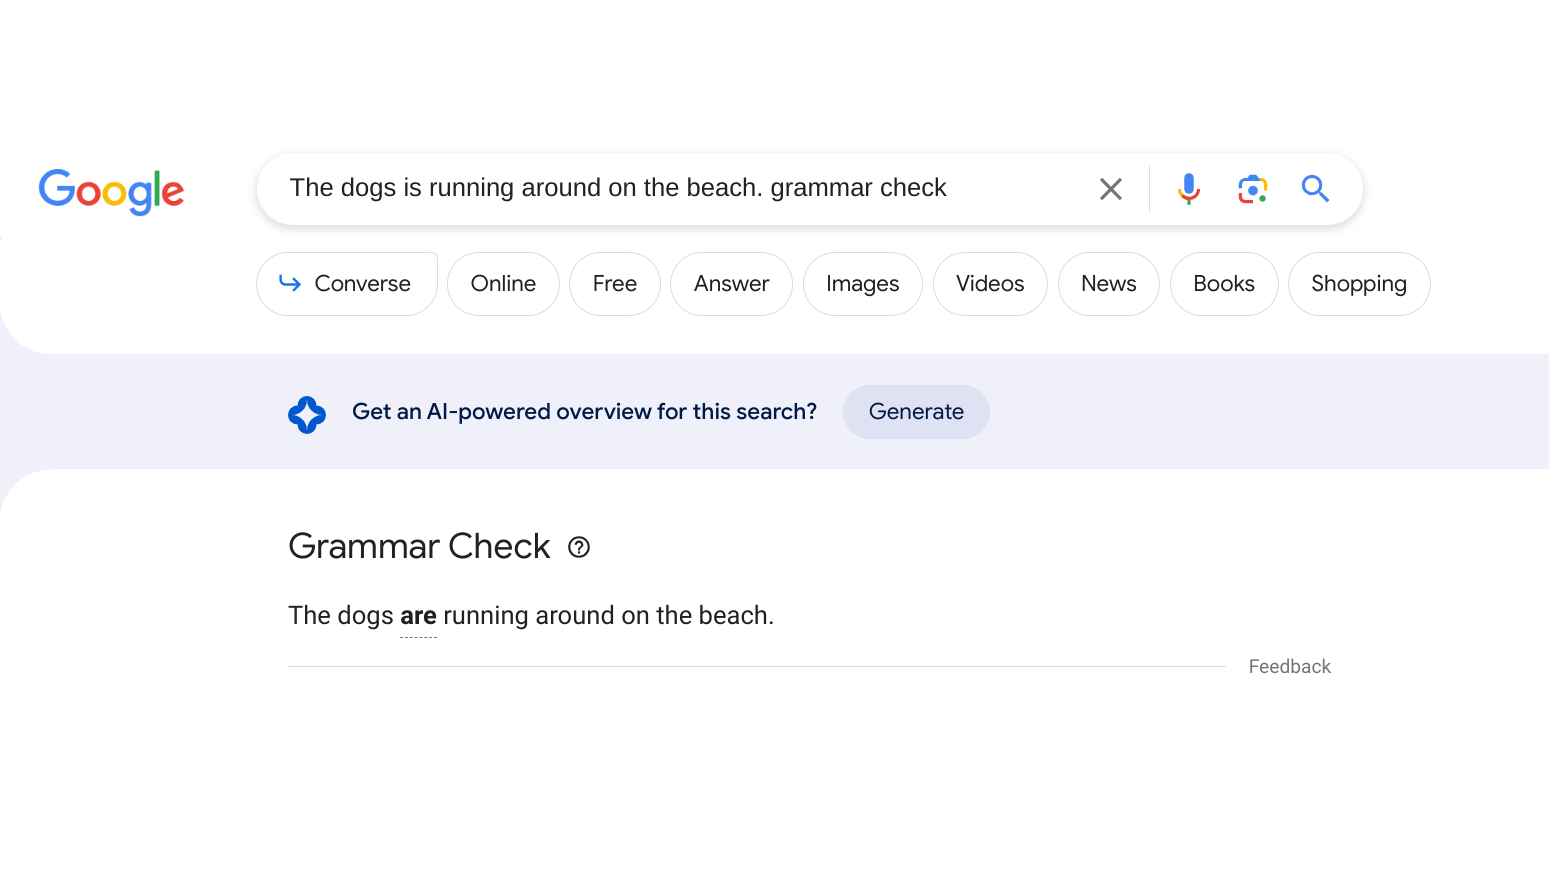 Google Поиск научился искать грамматические ошибки в запросах пользователей